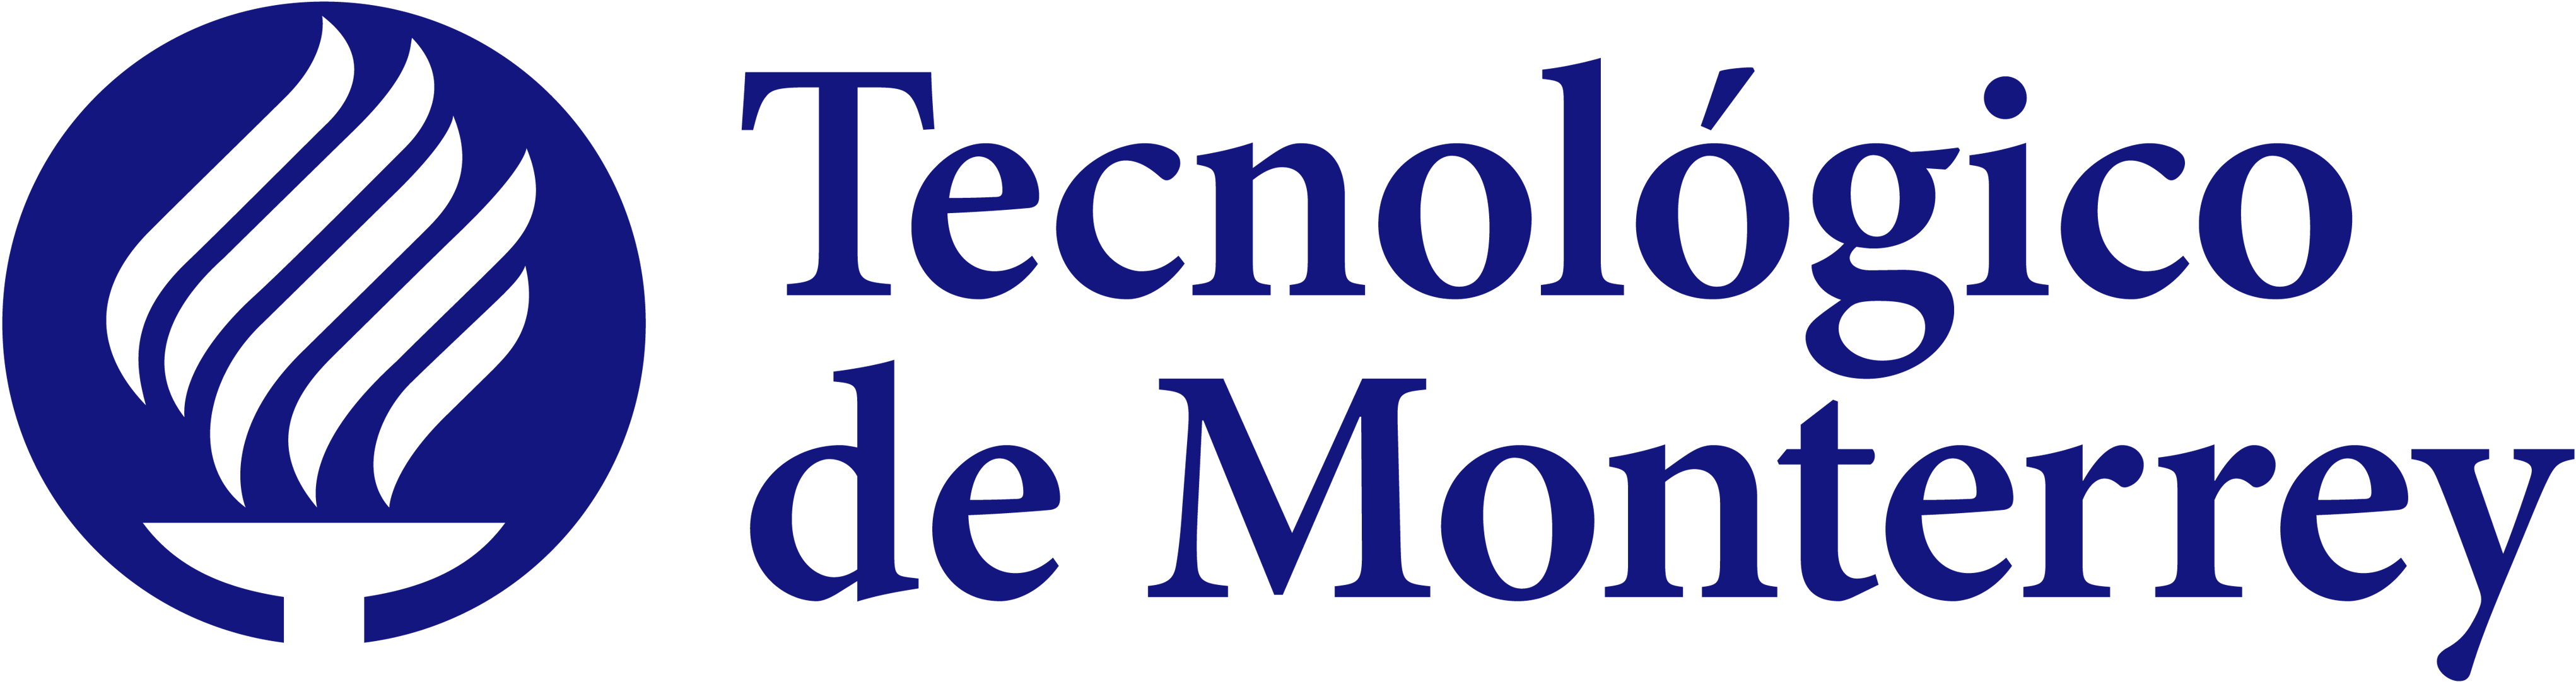 Tecnológico de Monterrey Logo